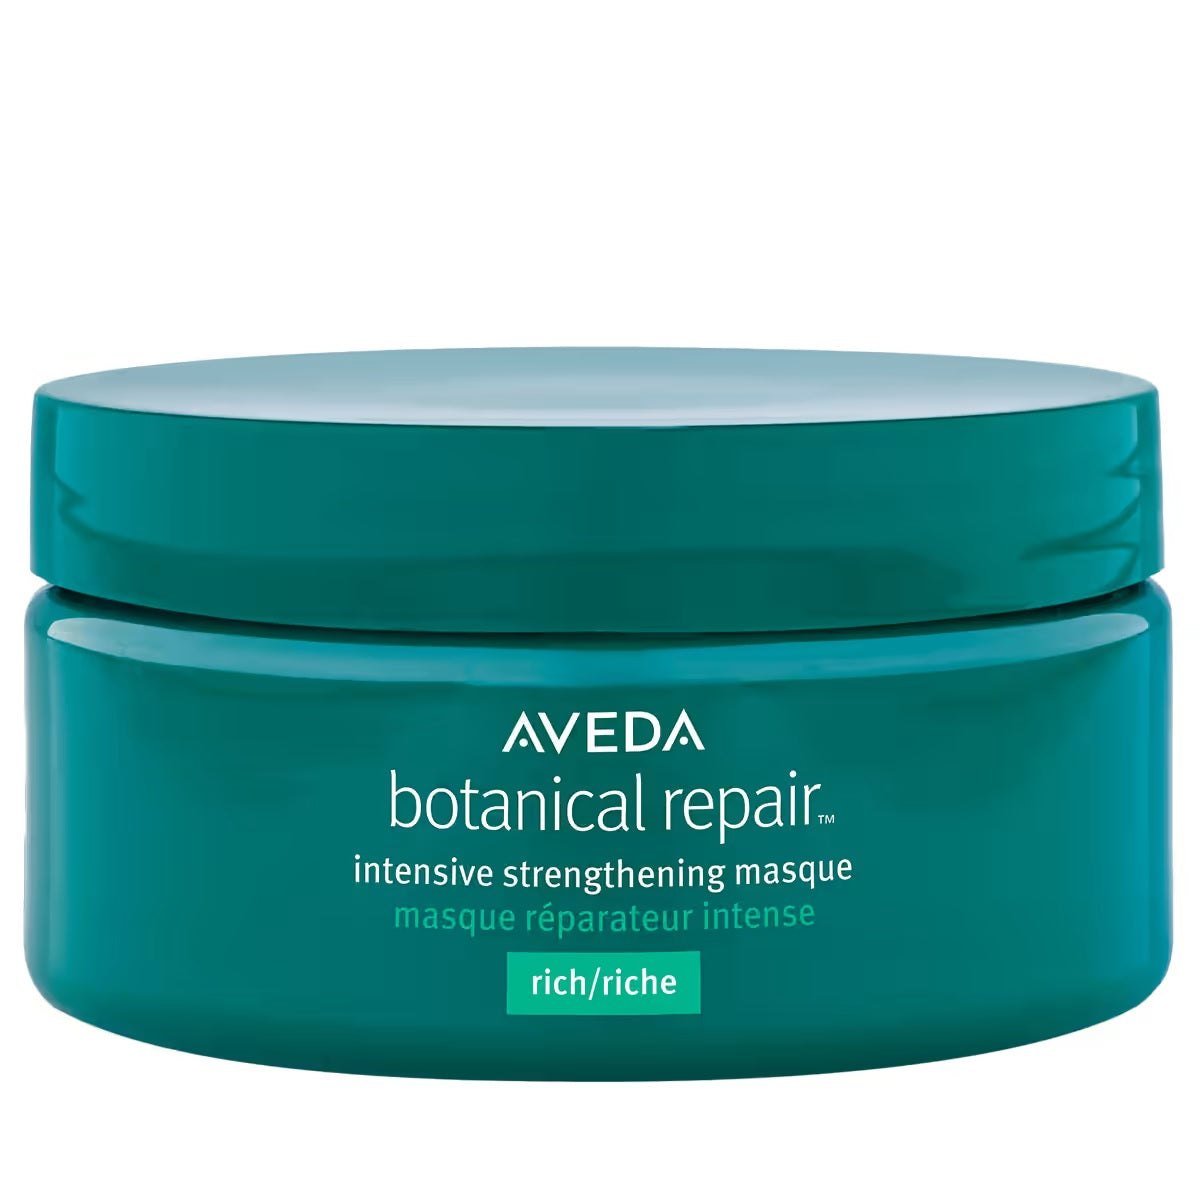 Aveda Botanical Repair Intensive Strengthening Masque Насыщенная интенсивно укрепляющая маска для волос 200мл филиппова ирина александровна волосы должны быть здоровыми красивыми блестящими